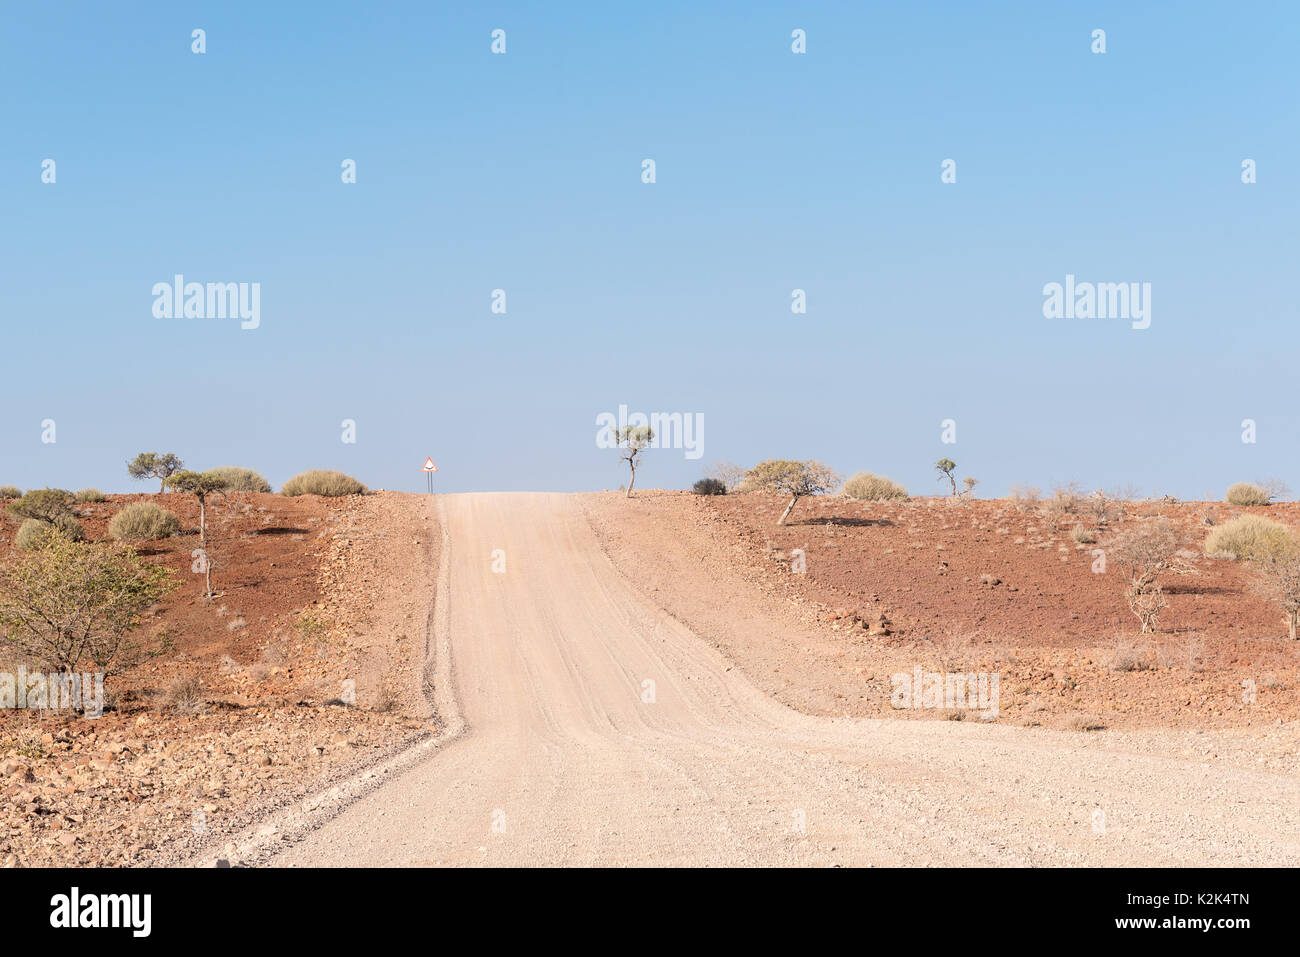 Le paysage semi-désertique rocheux à côté de la C40-road, près de Palmwag, dans la région de Kunene Namibie Banque D'Images